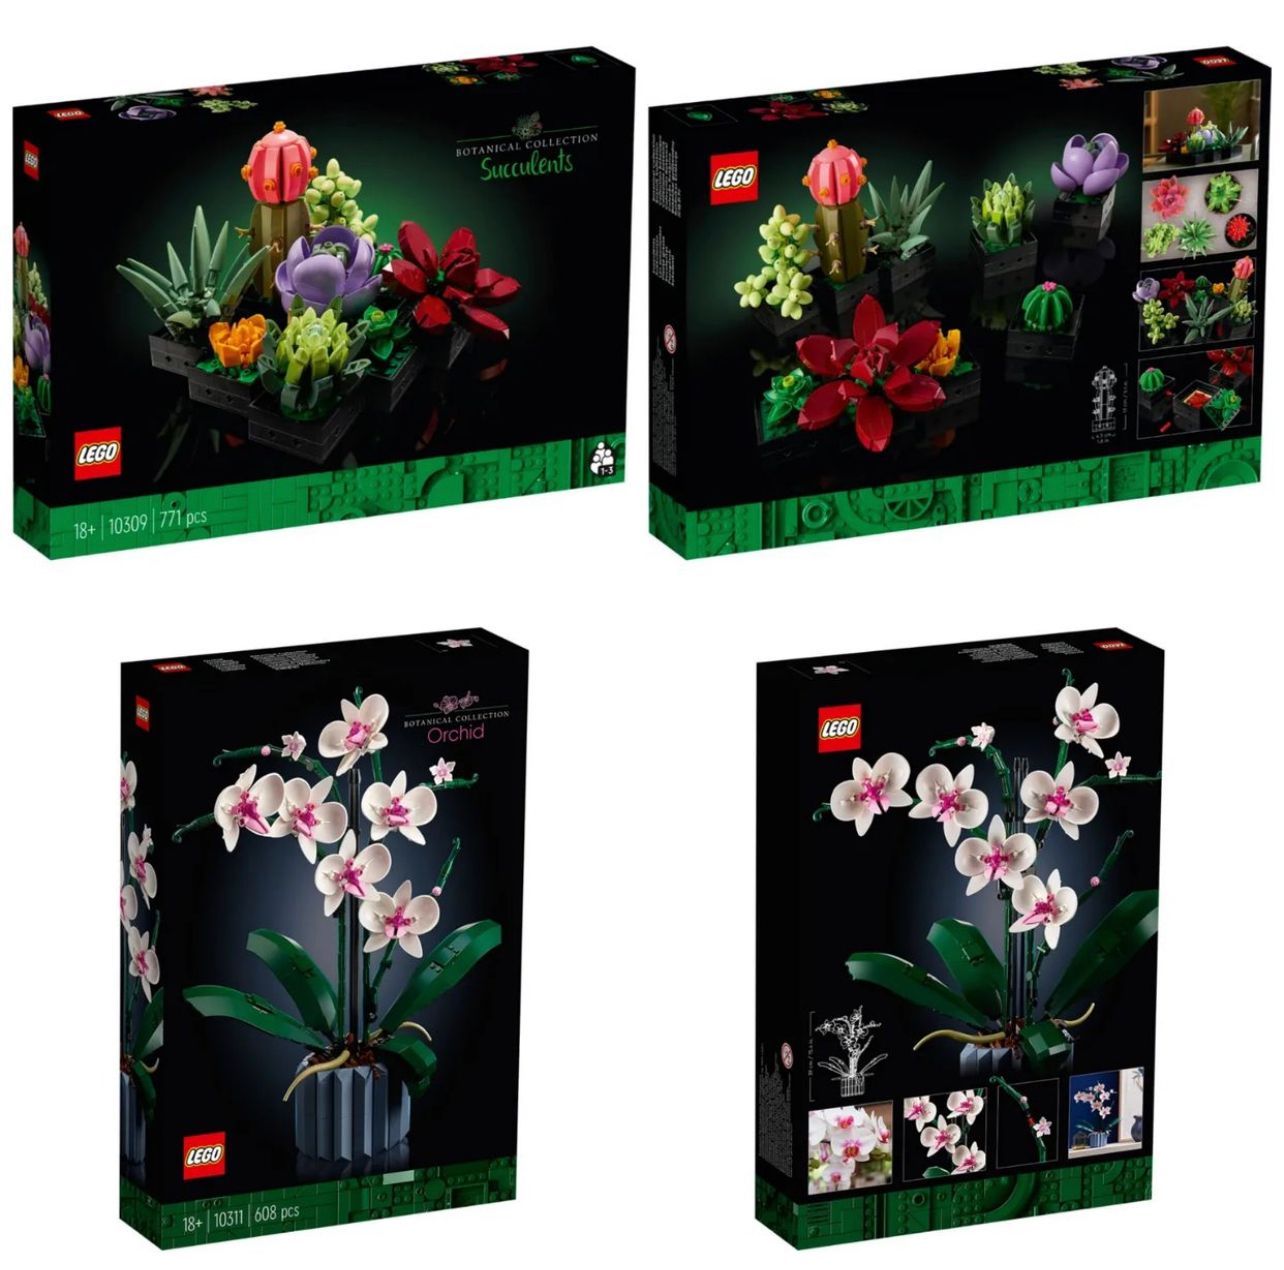 Ufficializzati i nuovi LEGO Botanical Collection: Piante grasse e Orchidea  (già ordinabile) - Il Mastro Costruttore